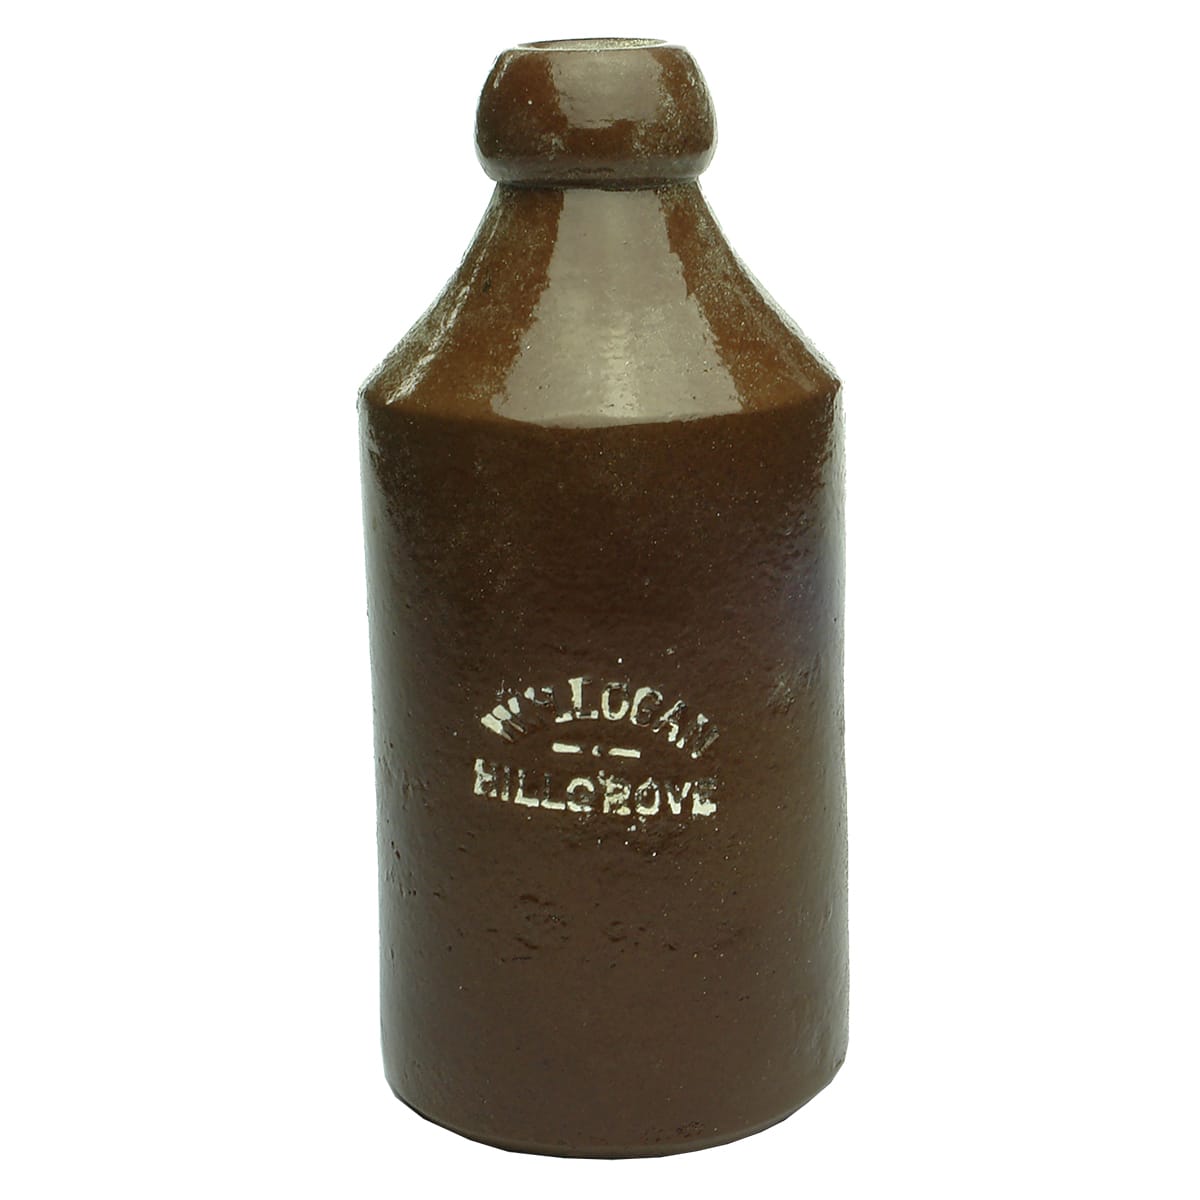 Ginger Beer. W. H. Logan, Hillgrove. Impressed. Salt Glaze. (New South Wales)